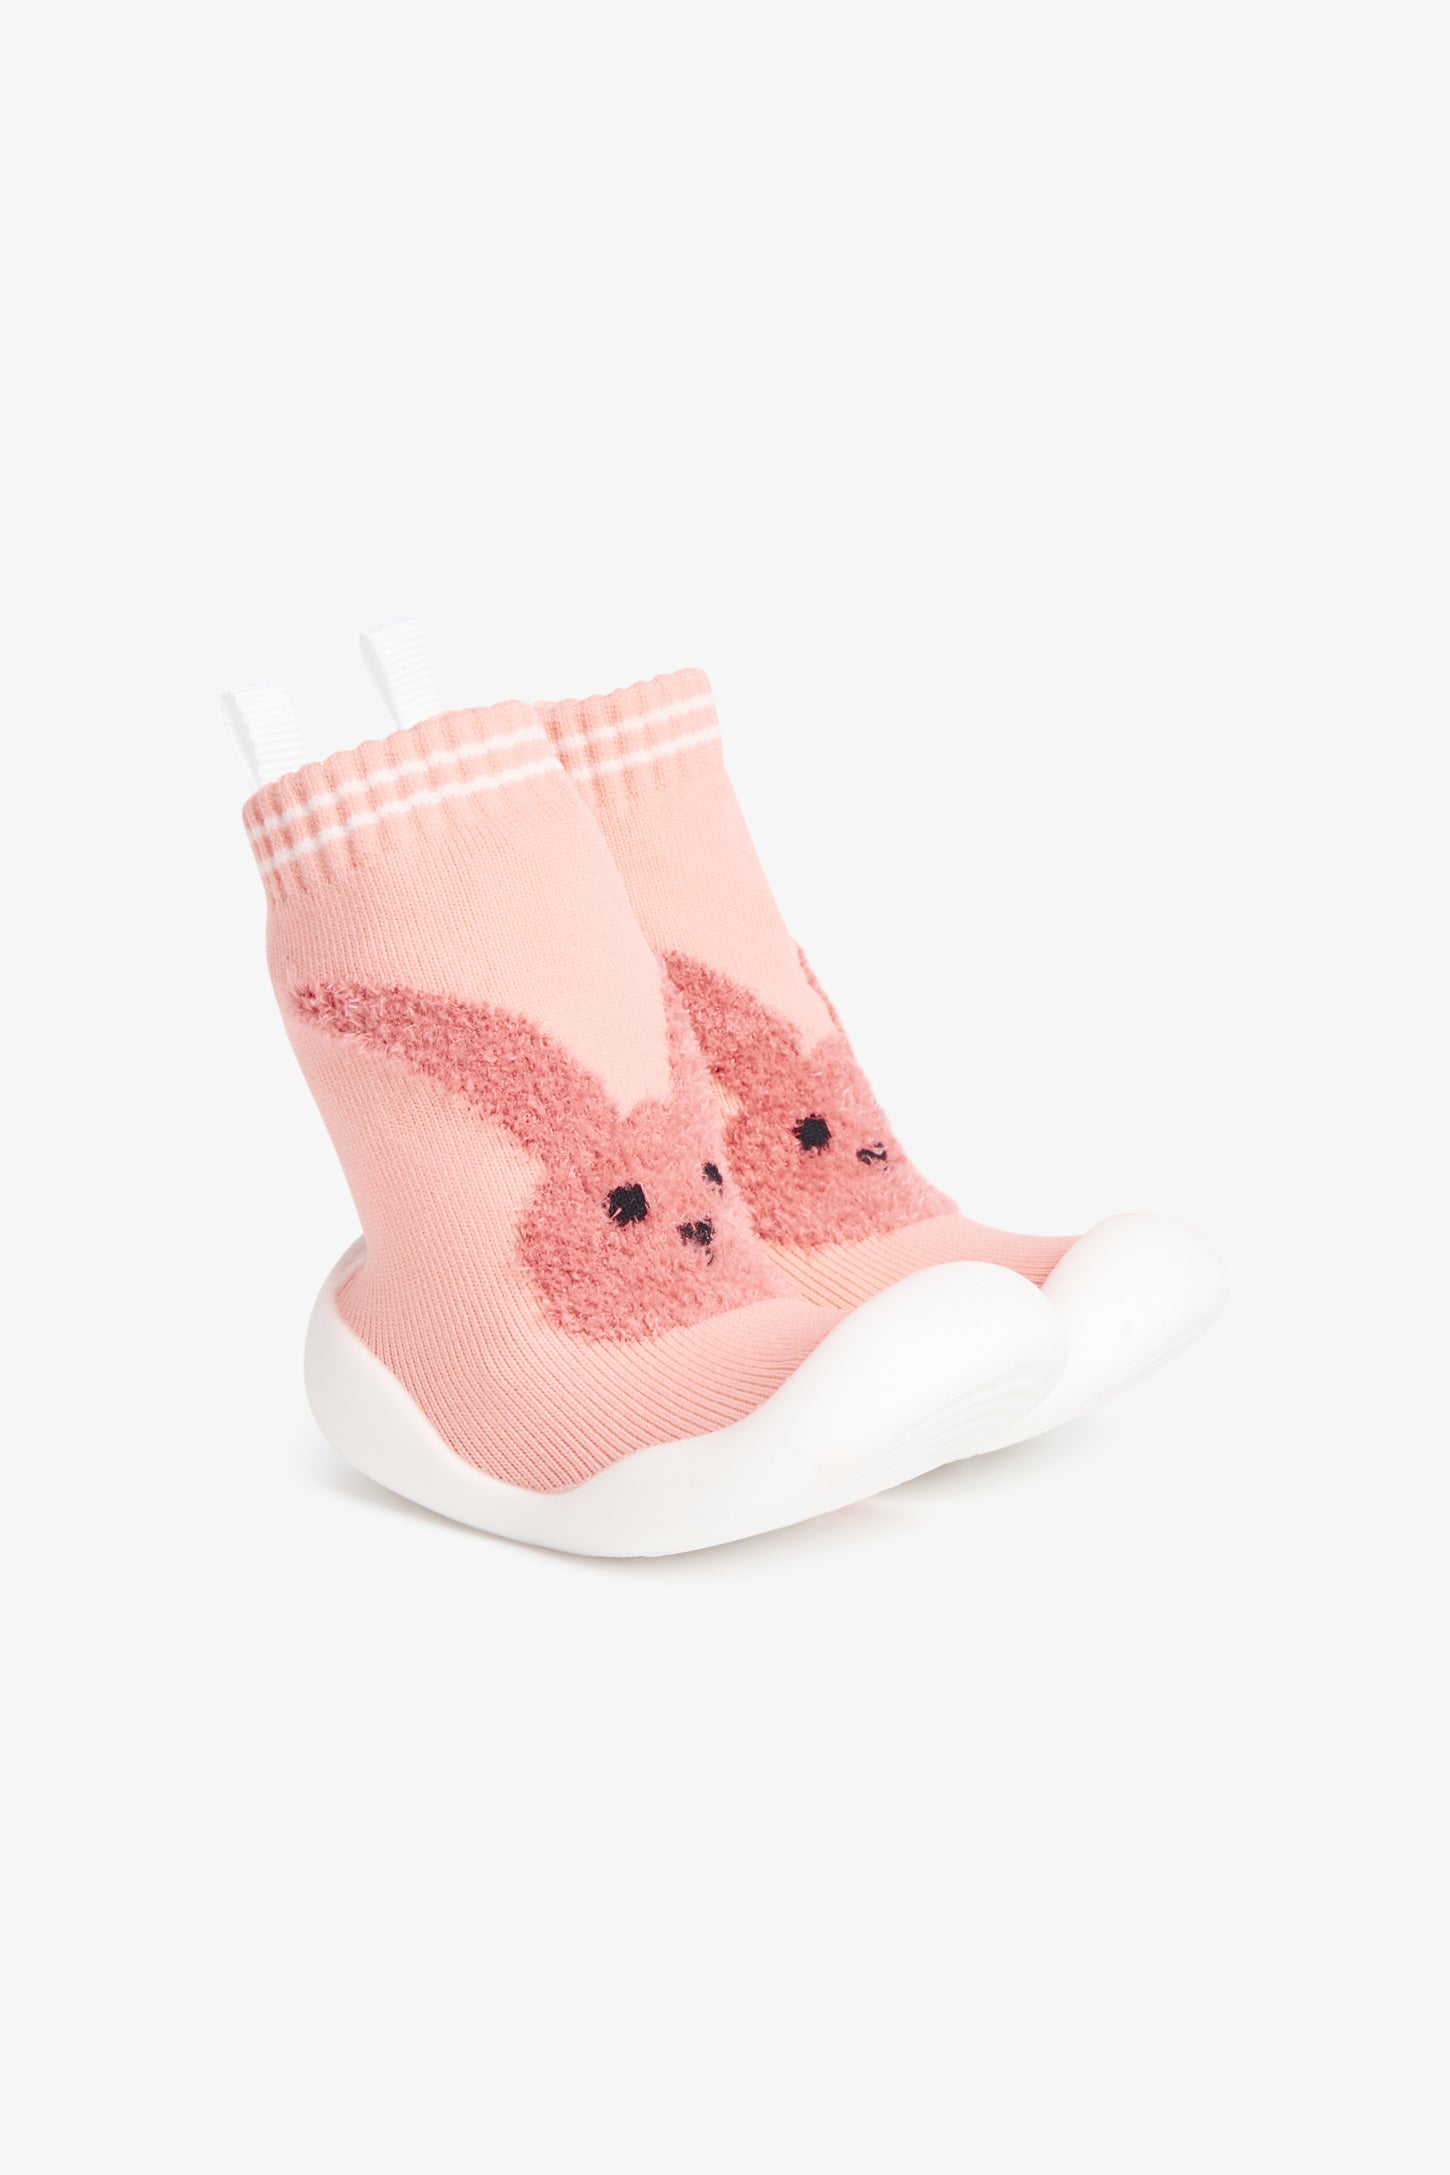 Pantoufle-chaussette en tricot avec semelle moulée - Bébé && ROSE